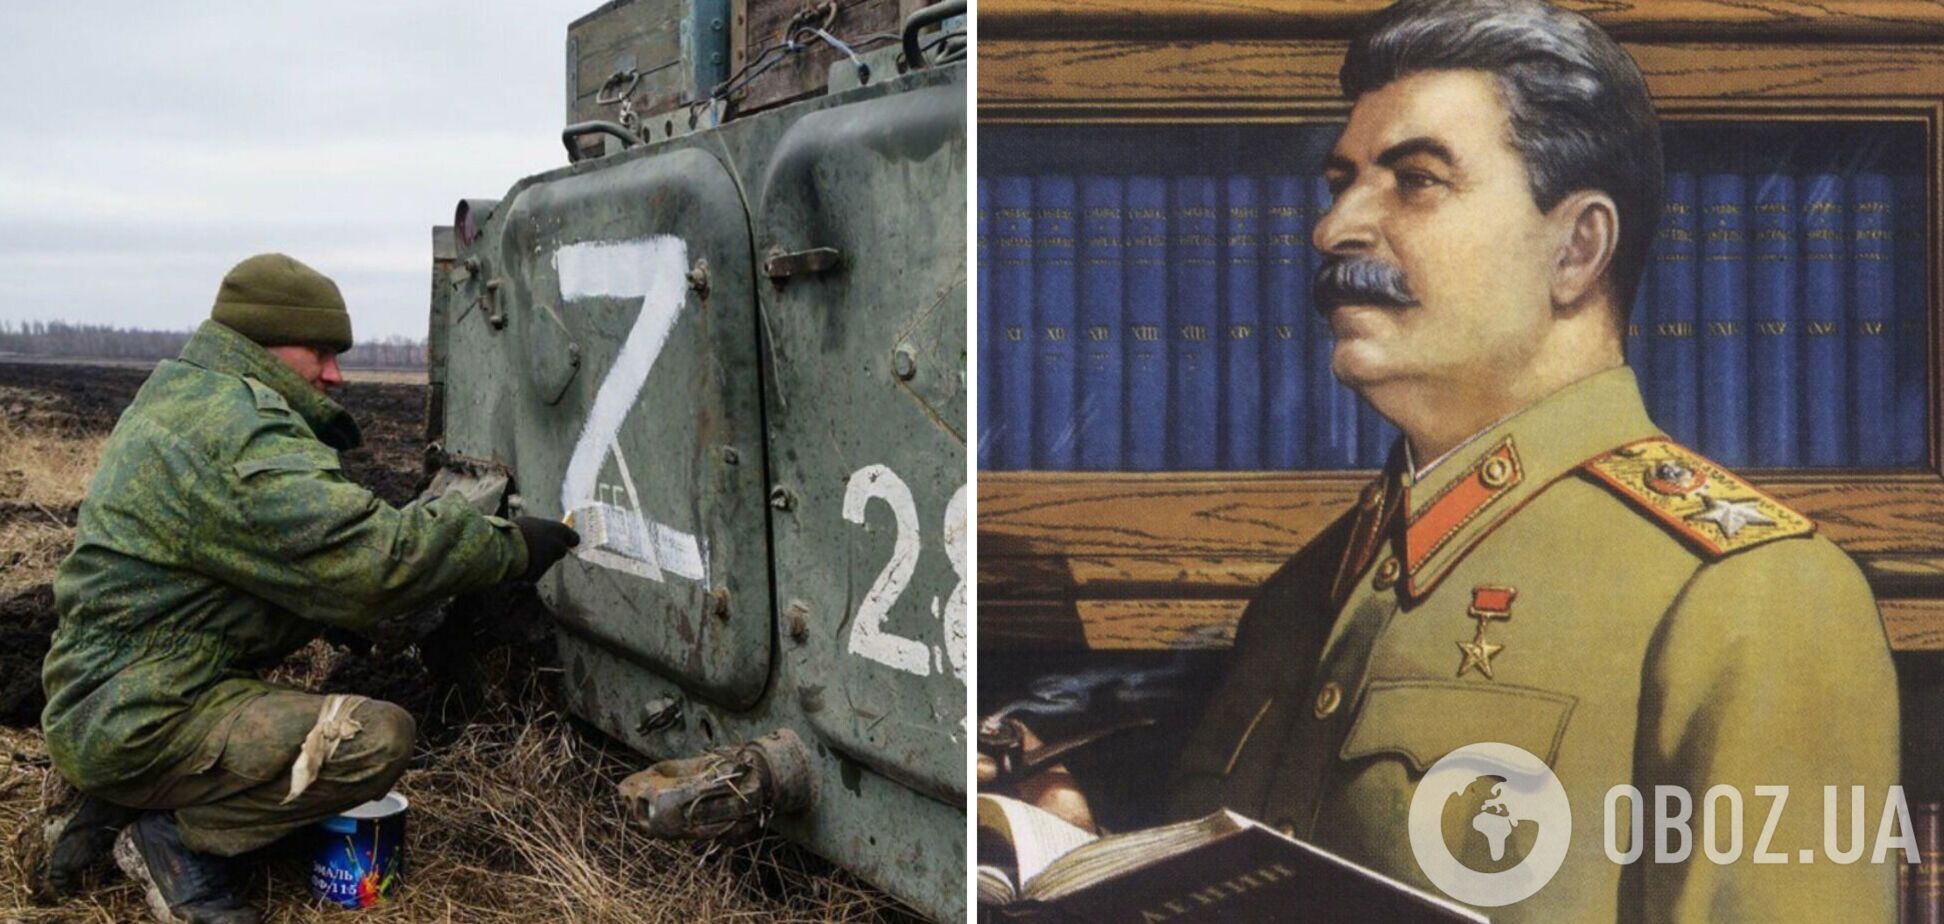 Российские пропагандисты заявили, что символ Z придумал Сталин в 1941 году: на самом деле им обозначен абзац. Видео